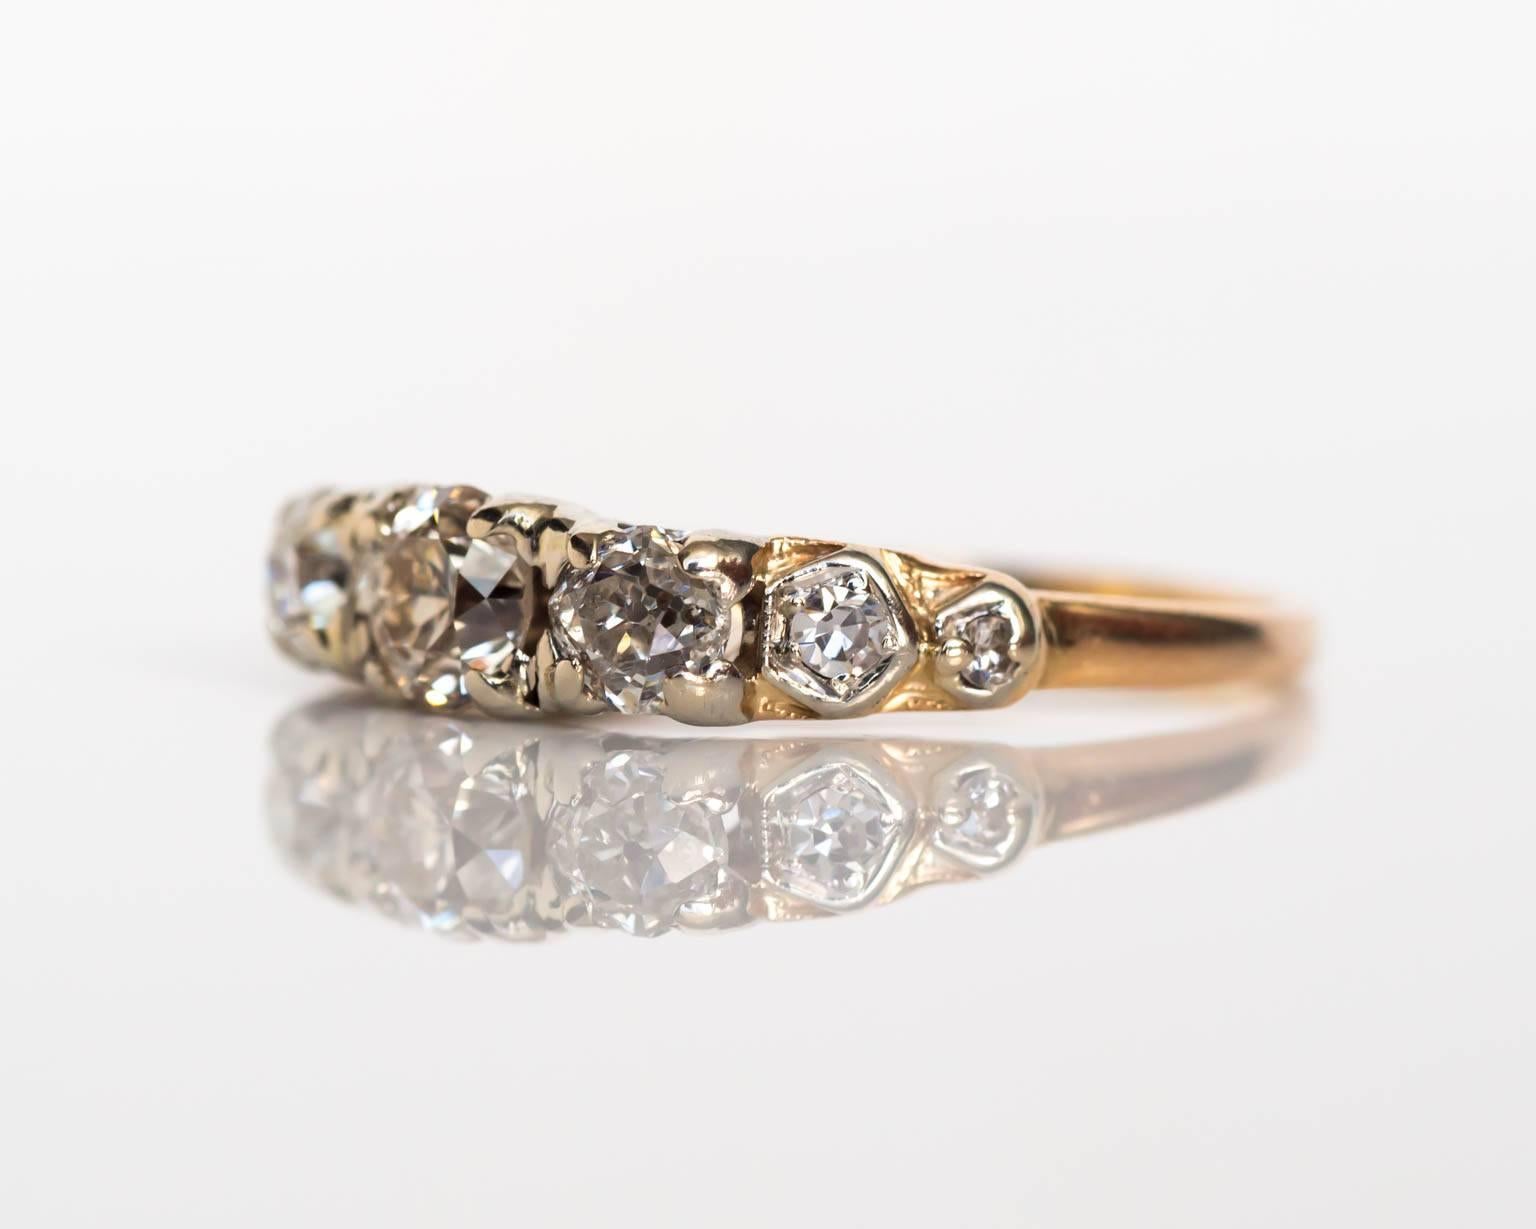 Item Details: 
Ring Size: 8
Metal Type: 14 Karat Yellow Gold & Platinum Prongs
Weight: 2.9 grams

Diamond Details:
Carat Weight: 1.10 Carat, total weight
Color: I-J
Clarity: SI